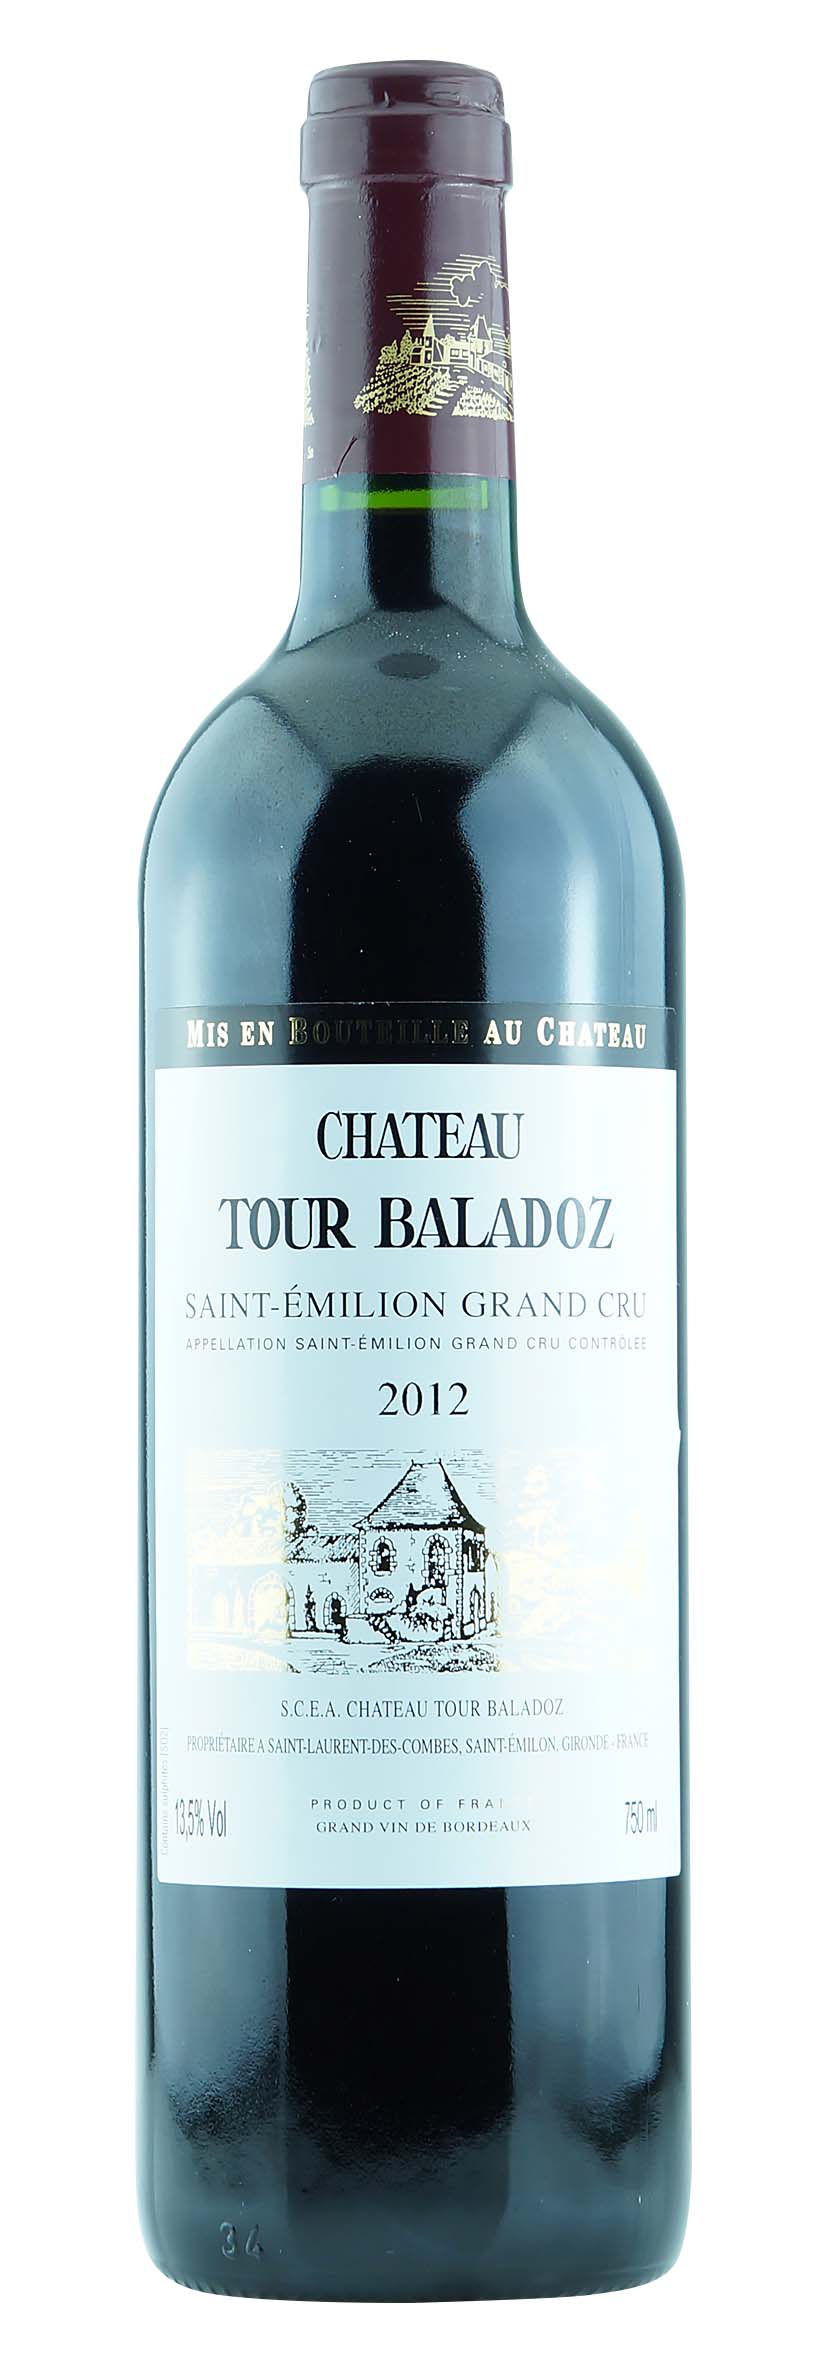 Saint-Emilion Grand Cru AOC Château Tour Baladoz 2012